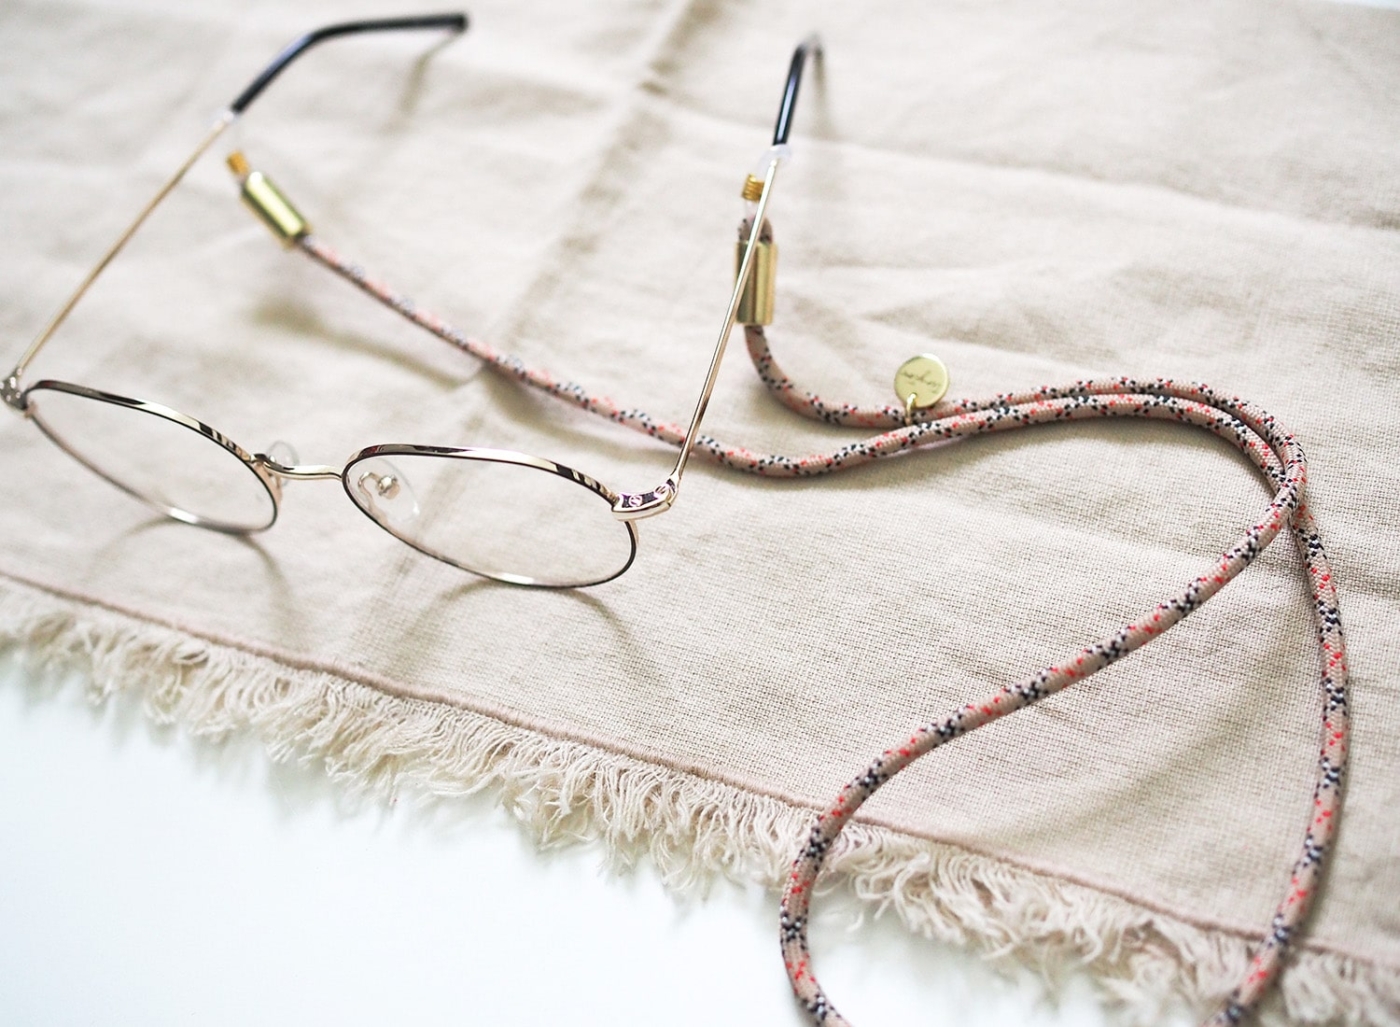 Brillenband aus Nylon-Tau in beige kariert an Brille mit goldenen Details.